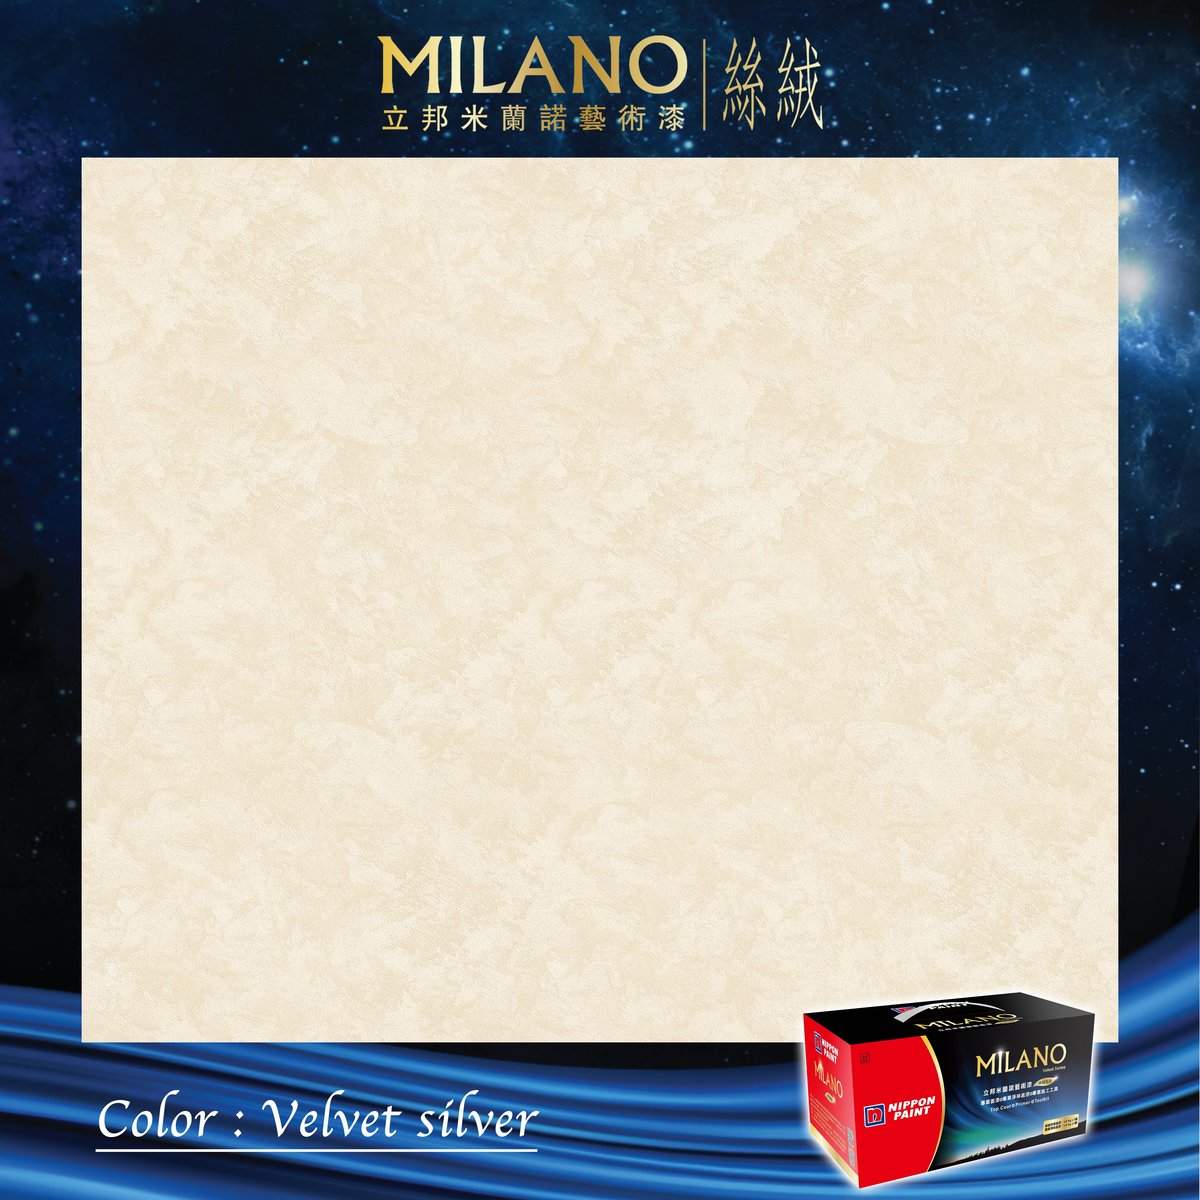 米蘭諾藝術漆絲絨銀 (基礎色)  2.4 公斤/套裝 (包括1公斤面漆、1.4公斤底漆、毛刷、刮片、攪拌棒)